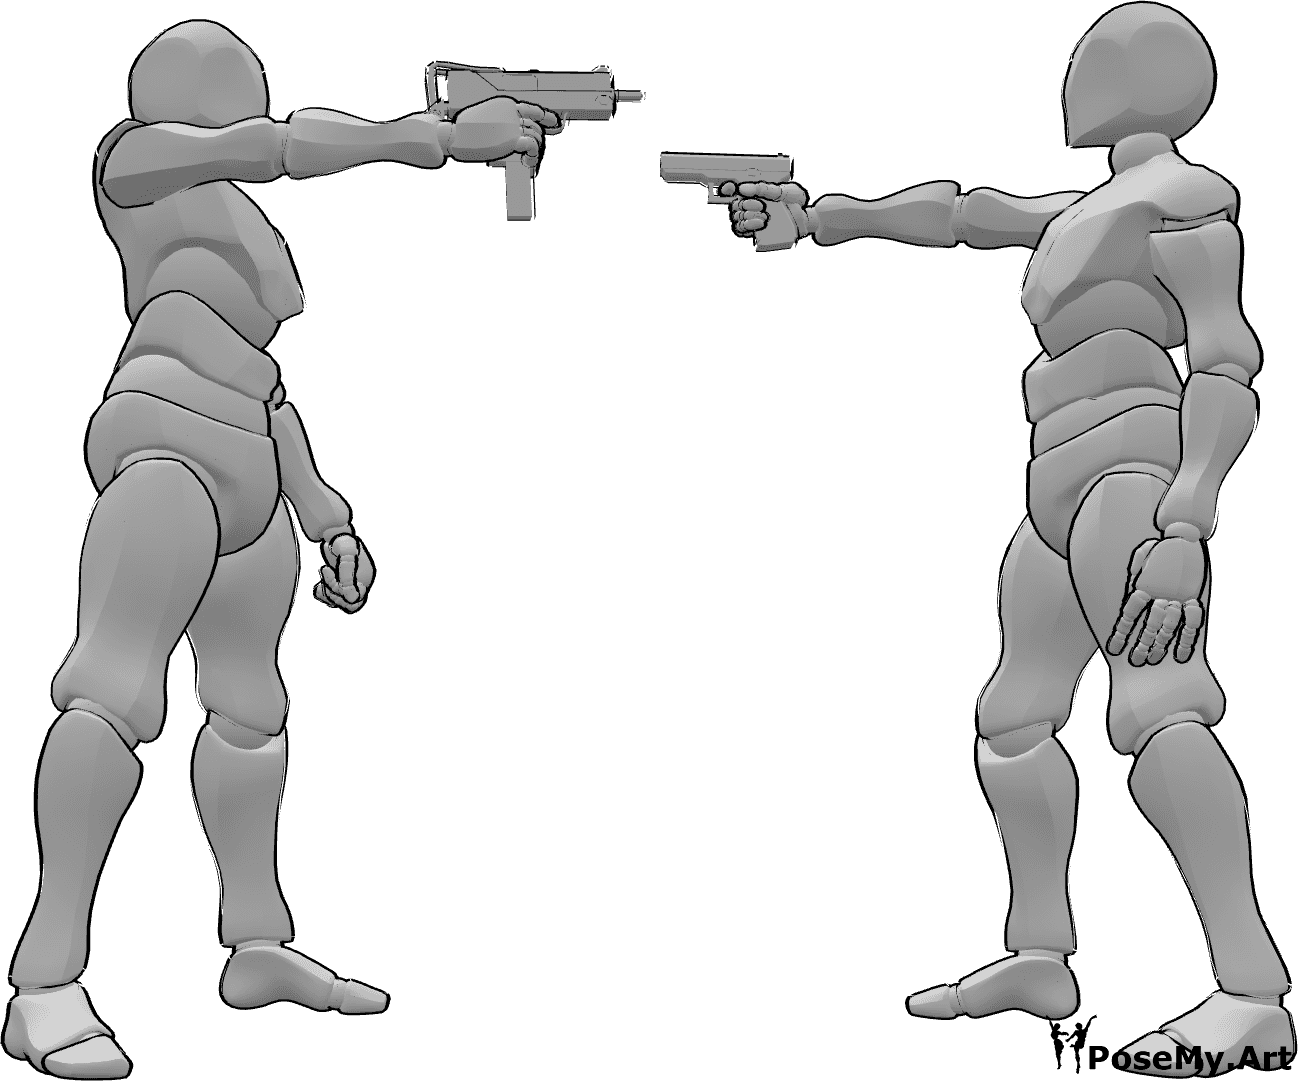 Referencia de poses- Los hombres que apuntan con armas posan - Dos hombres se apuntan con sus armas